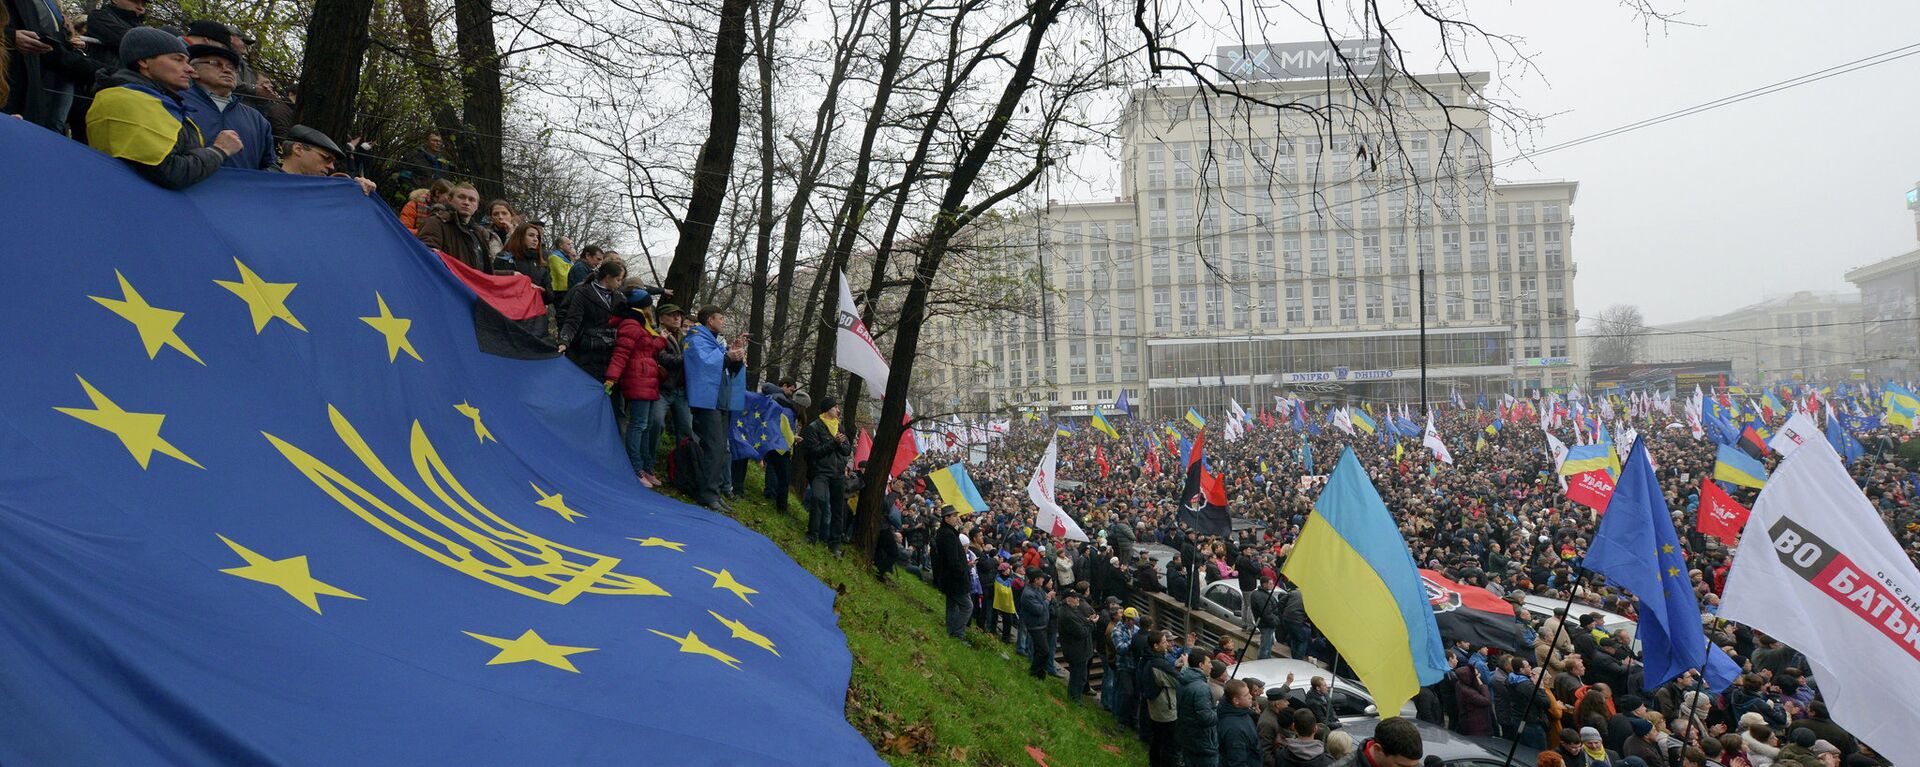 Массивни проевропски митинг у Кијеву. Новембар 24, 2013. - Sputnik Србија, 1920, 24.06.2022